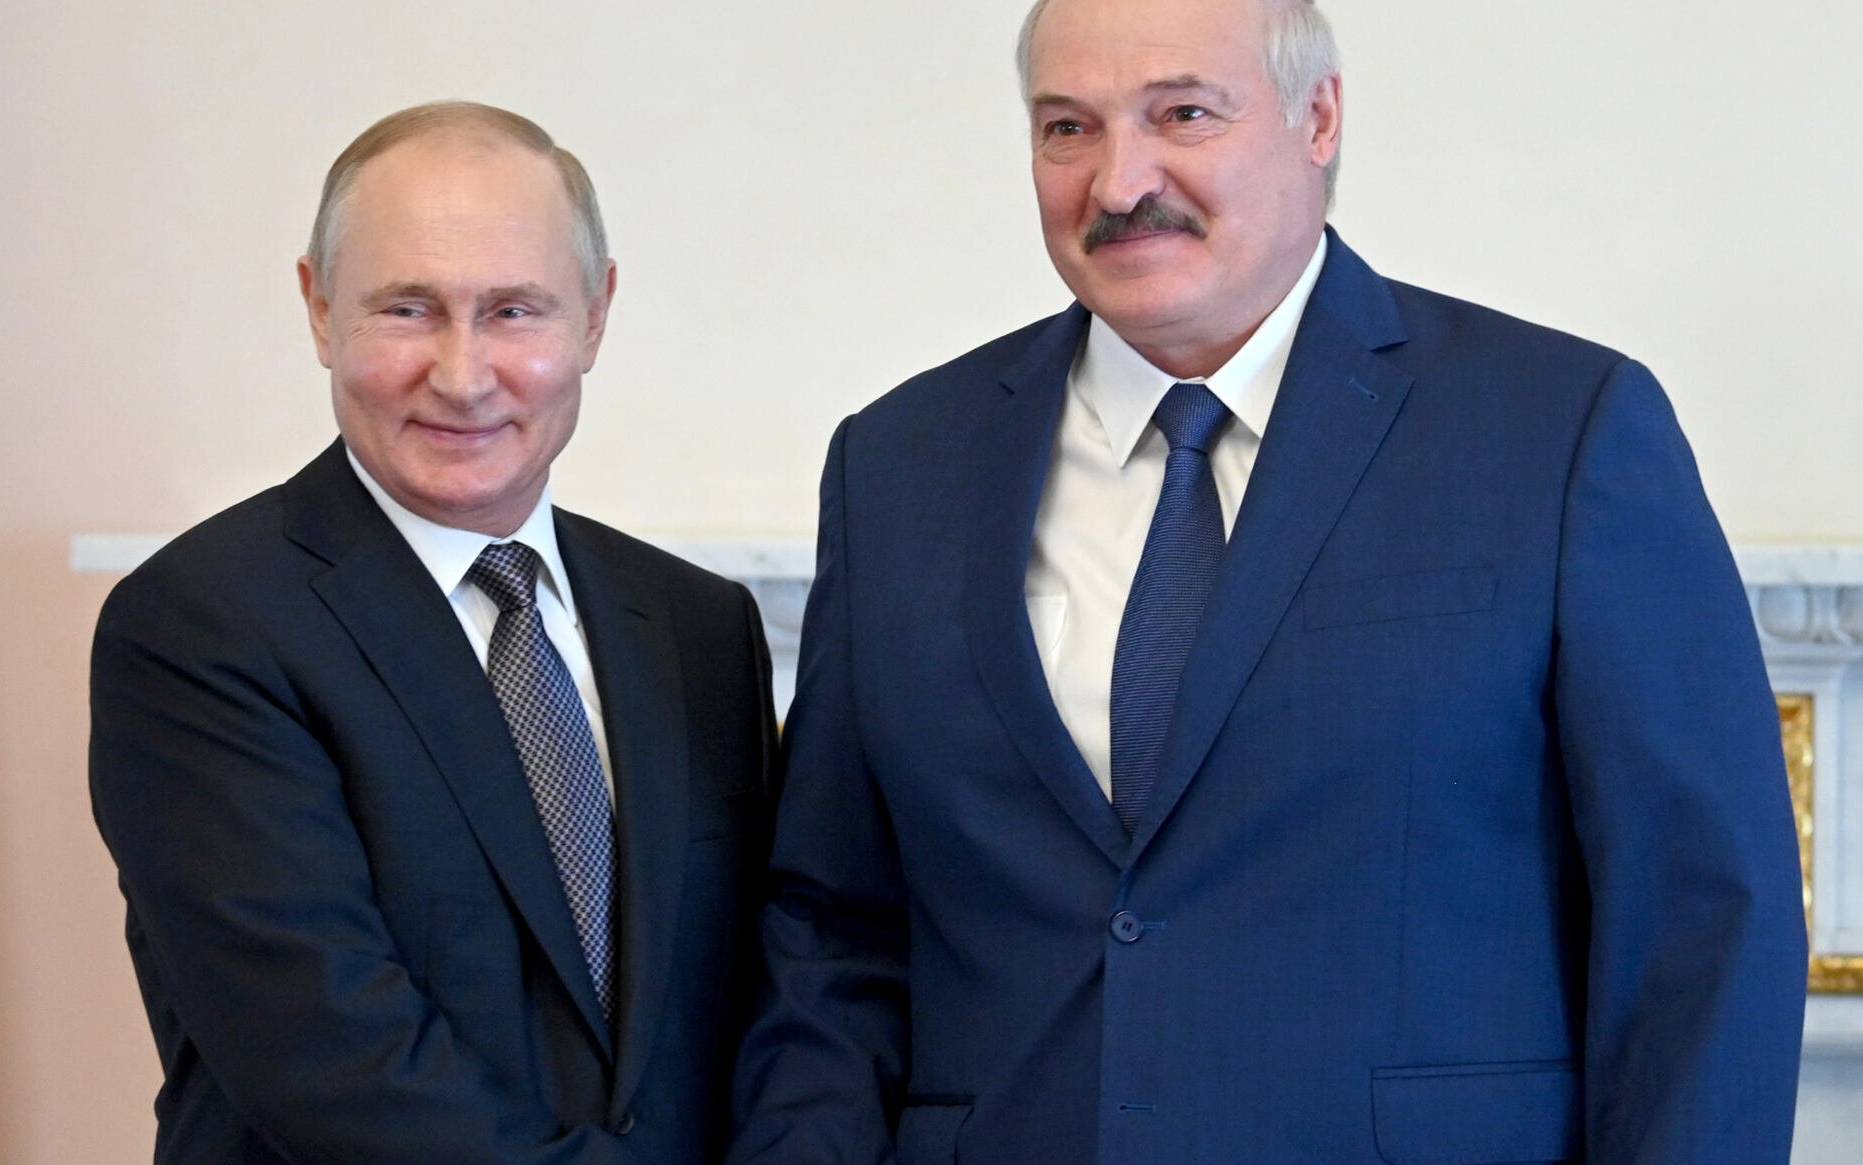 Grafika do artykułu Łukaszenka jest "chuliganem", chce okupu. Putinowi to pasuje [ROZMOWA]